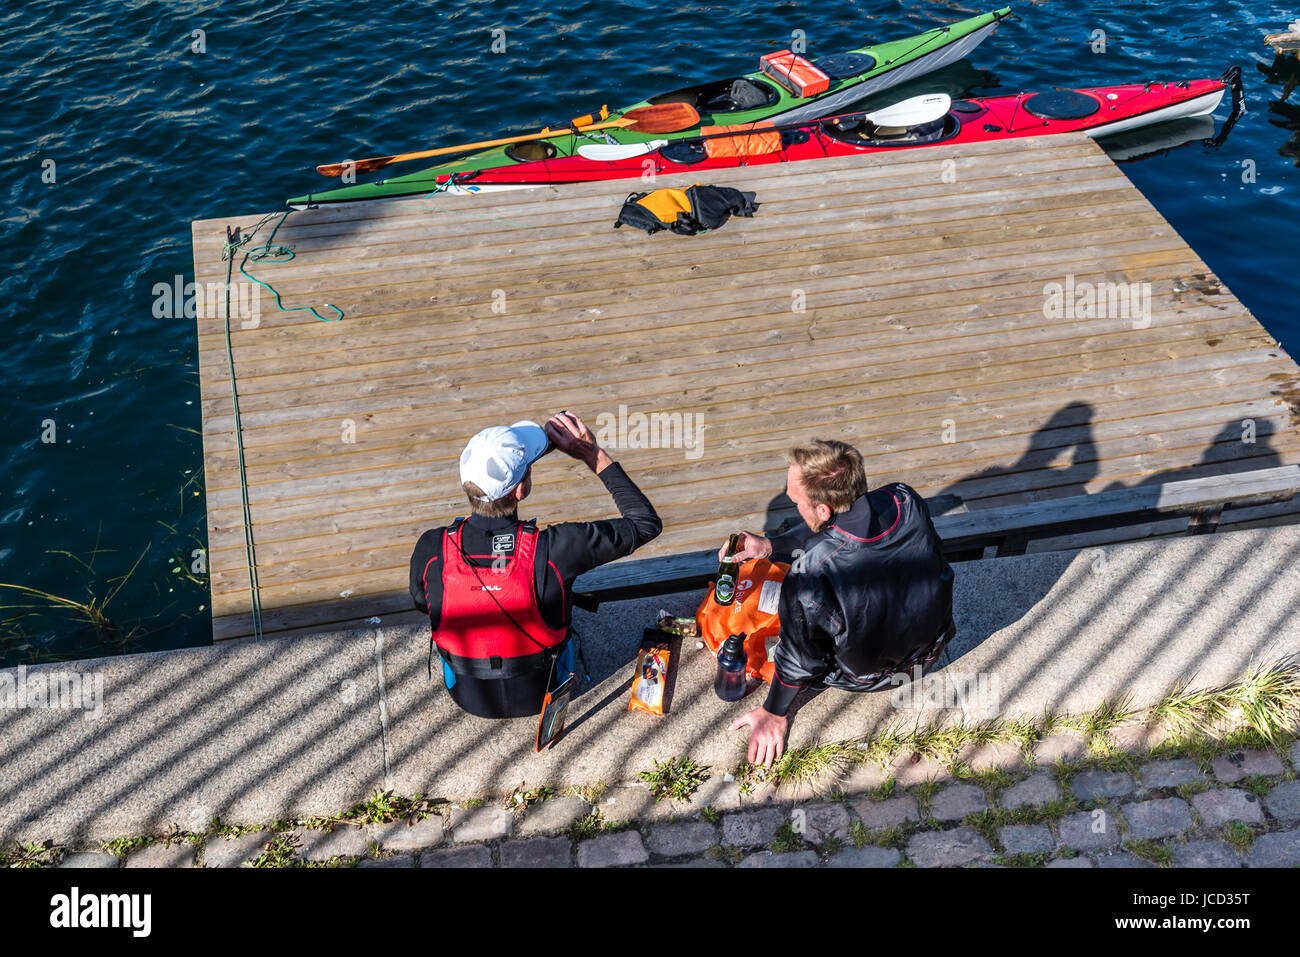 Kopenhagen, Dänemark - 11 August 2016: kanuten Ausruhen nach Übung und trinken Bier sitzen auf Waterfront von Kopenhagen in einem sonnigen Sommertag. Stockfoto